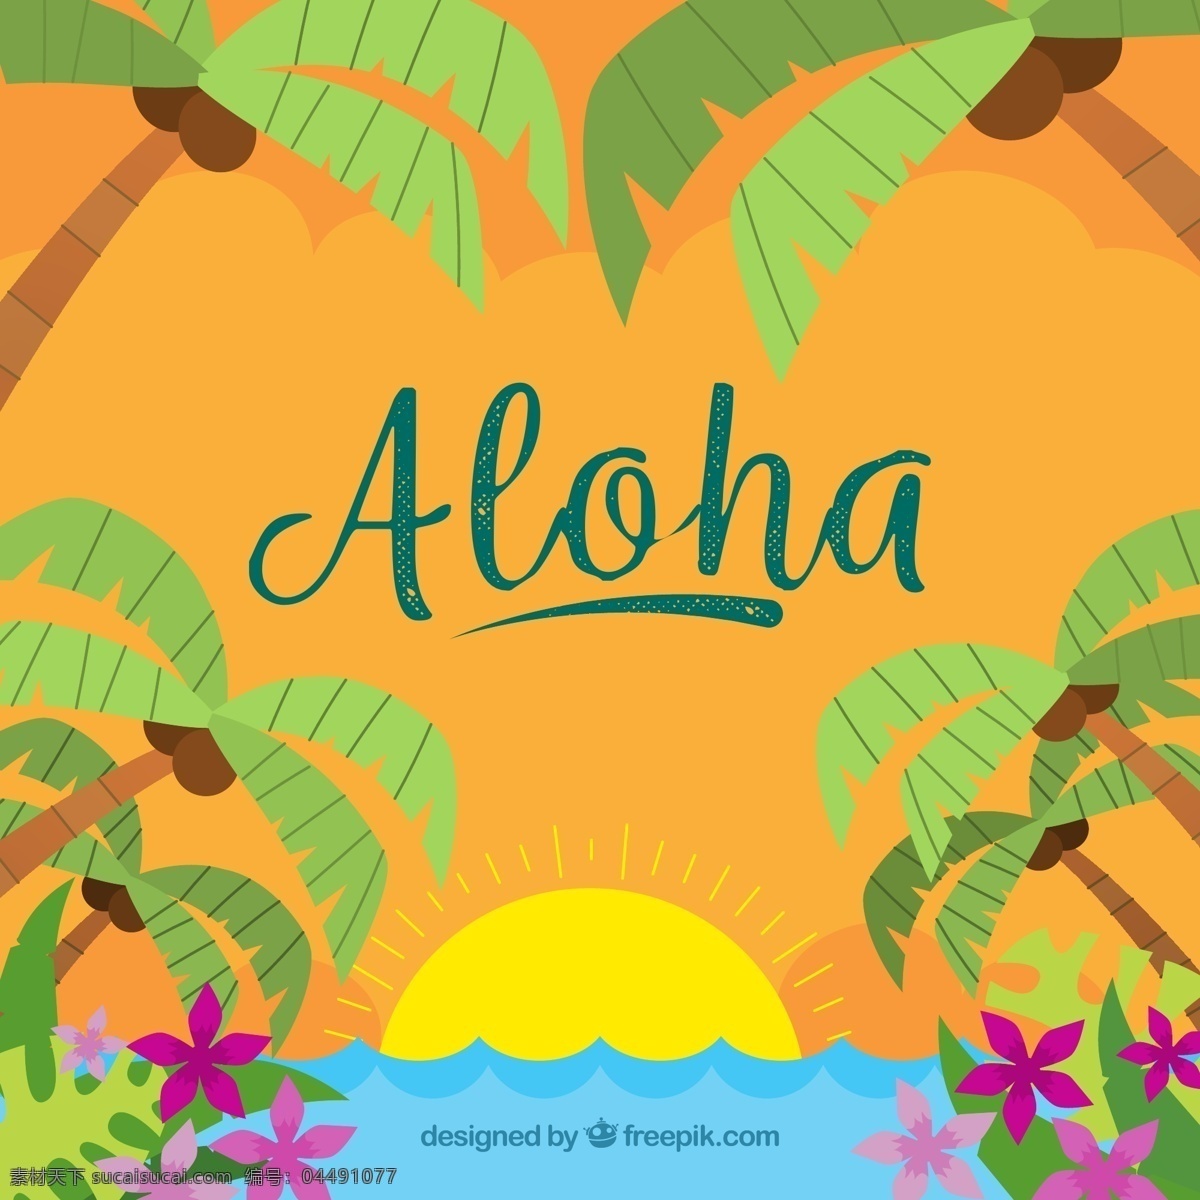 彩色 夏威夷 岛屿 日落 风景 矢量 大海 椰子树 棕榈树 花卉 太阳 动漫动画 风景漫画